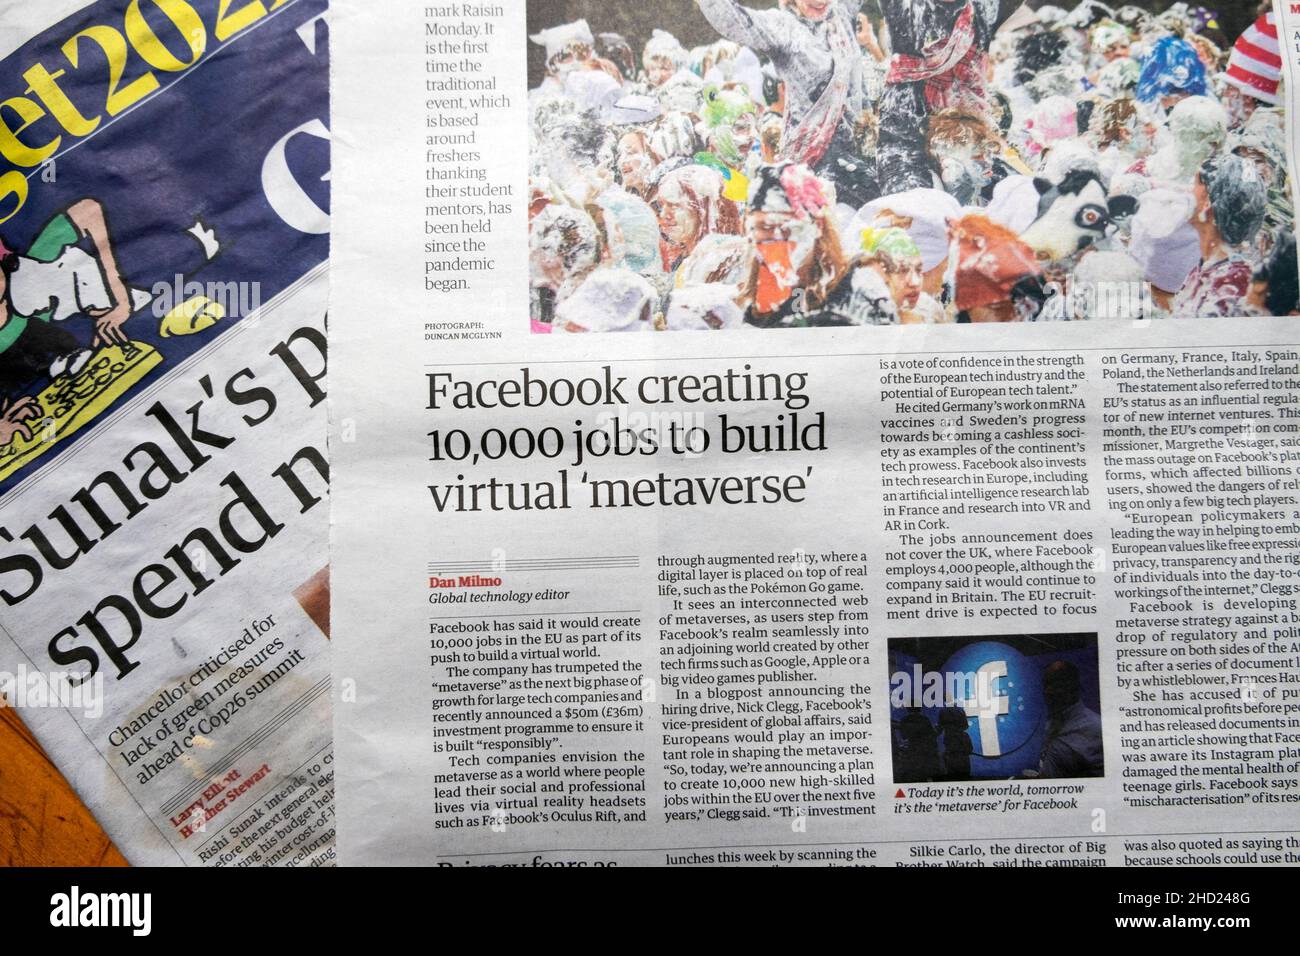 "Facebook créant 10 000 emplois pour construire virtuel 'metaverse' journal Guardian titre de l'article Facebook clipping le 18 octobre 2021 à Londres Royaume-Uni Banque D'Images